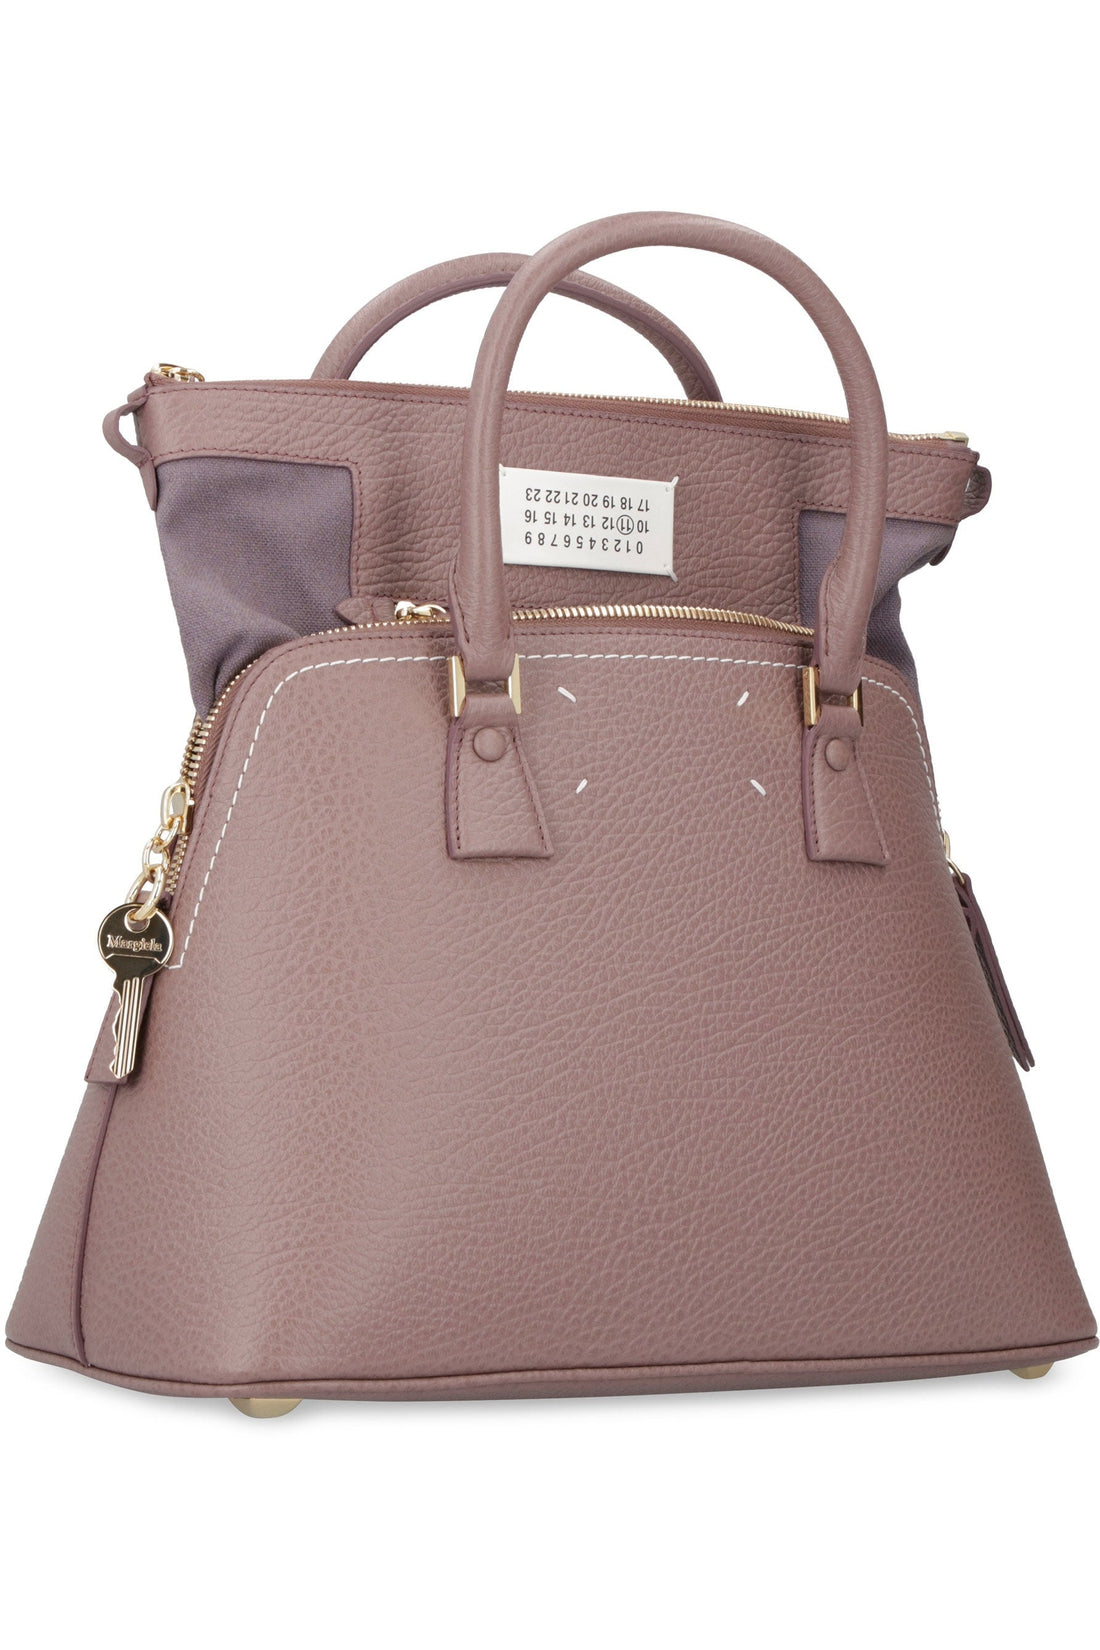 Maison Margiela-OUTLET-SALE-5AC leather handbag-ARCHIVIST